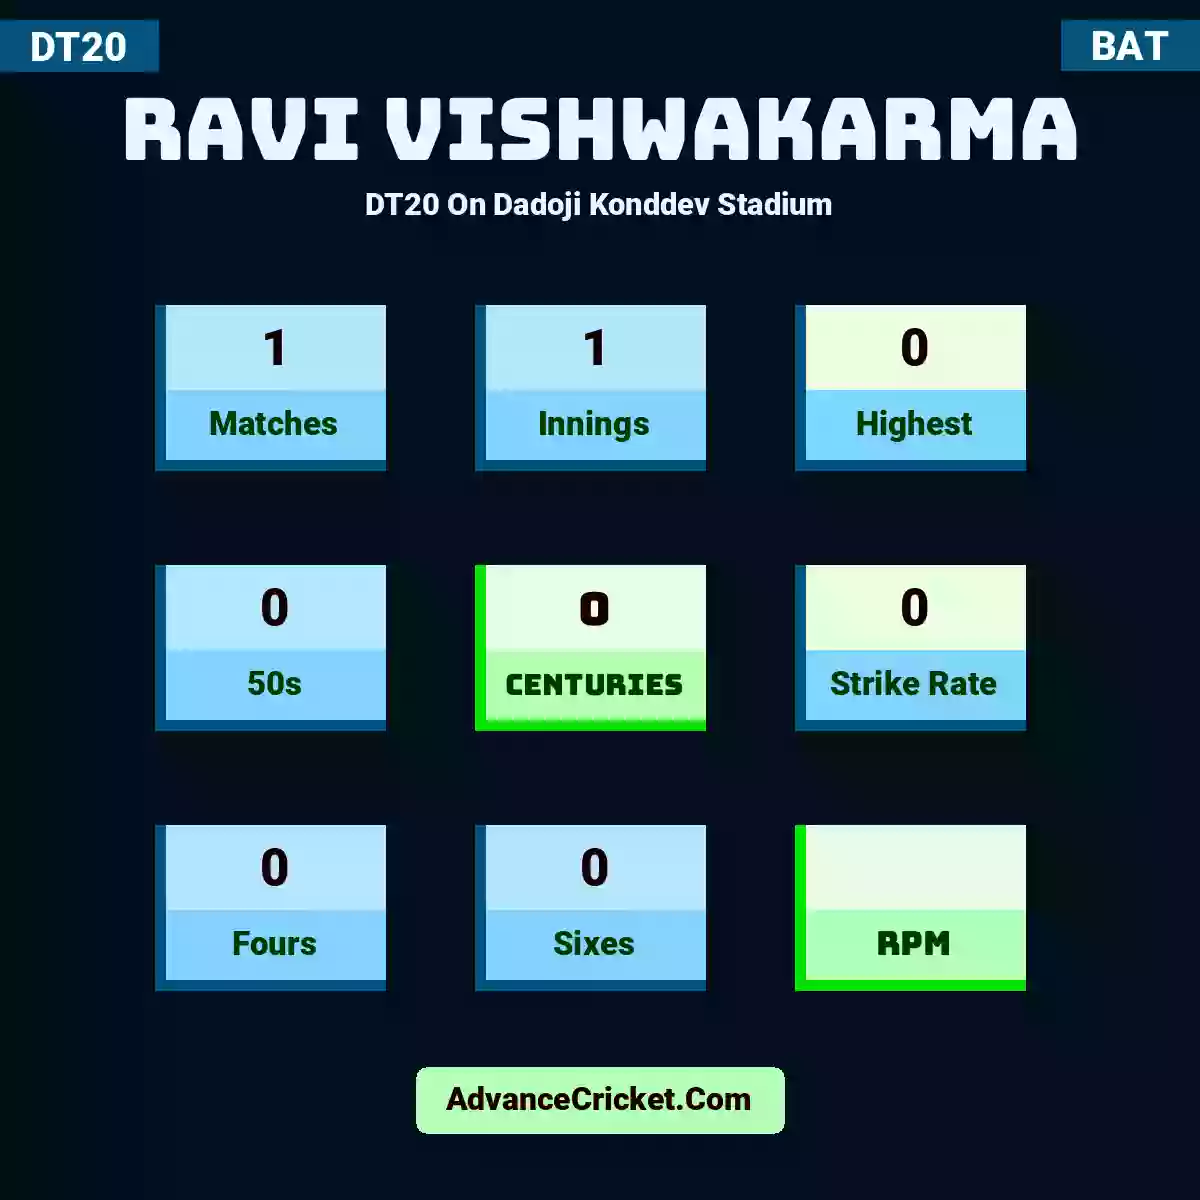 Ravi Vishwakarma DT20  On Dadoji Konddev Stadium, Ravi Vishwakarma played 1 matches, scored 0 runs as highest, 0 half-centuries, and 0 centuries, with a strike rate of 0. R.Vishwakarma hit 0 fours and 0 sixes.